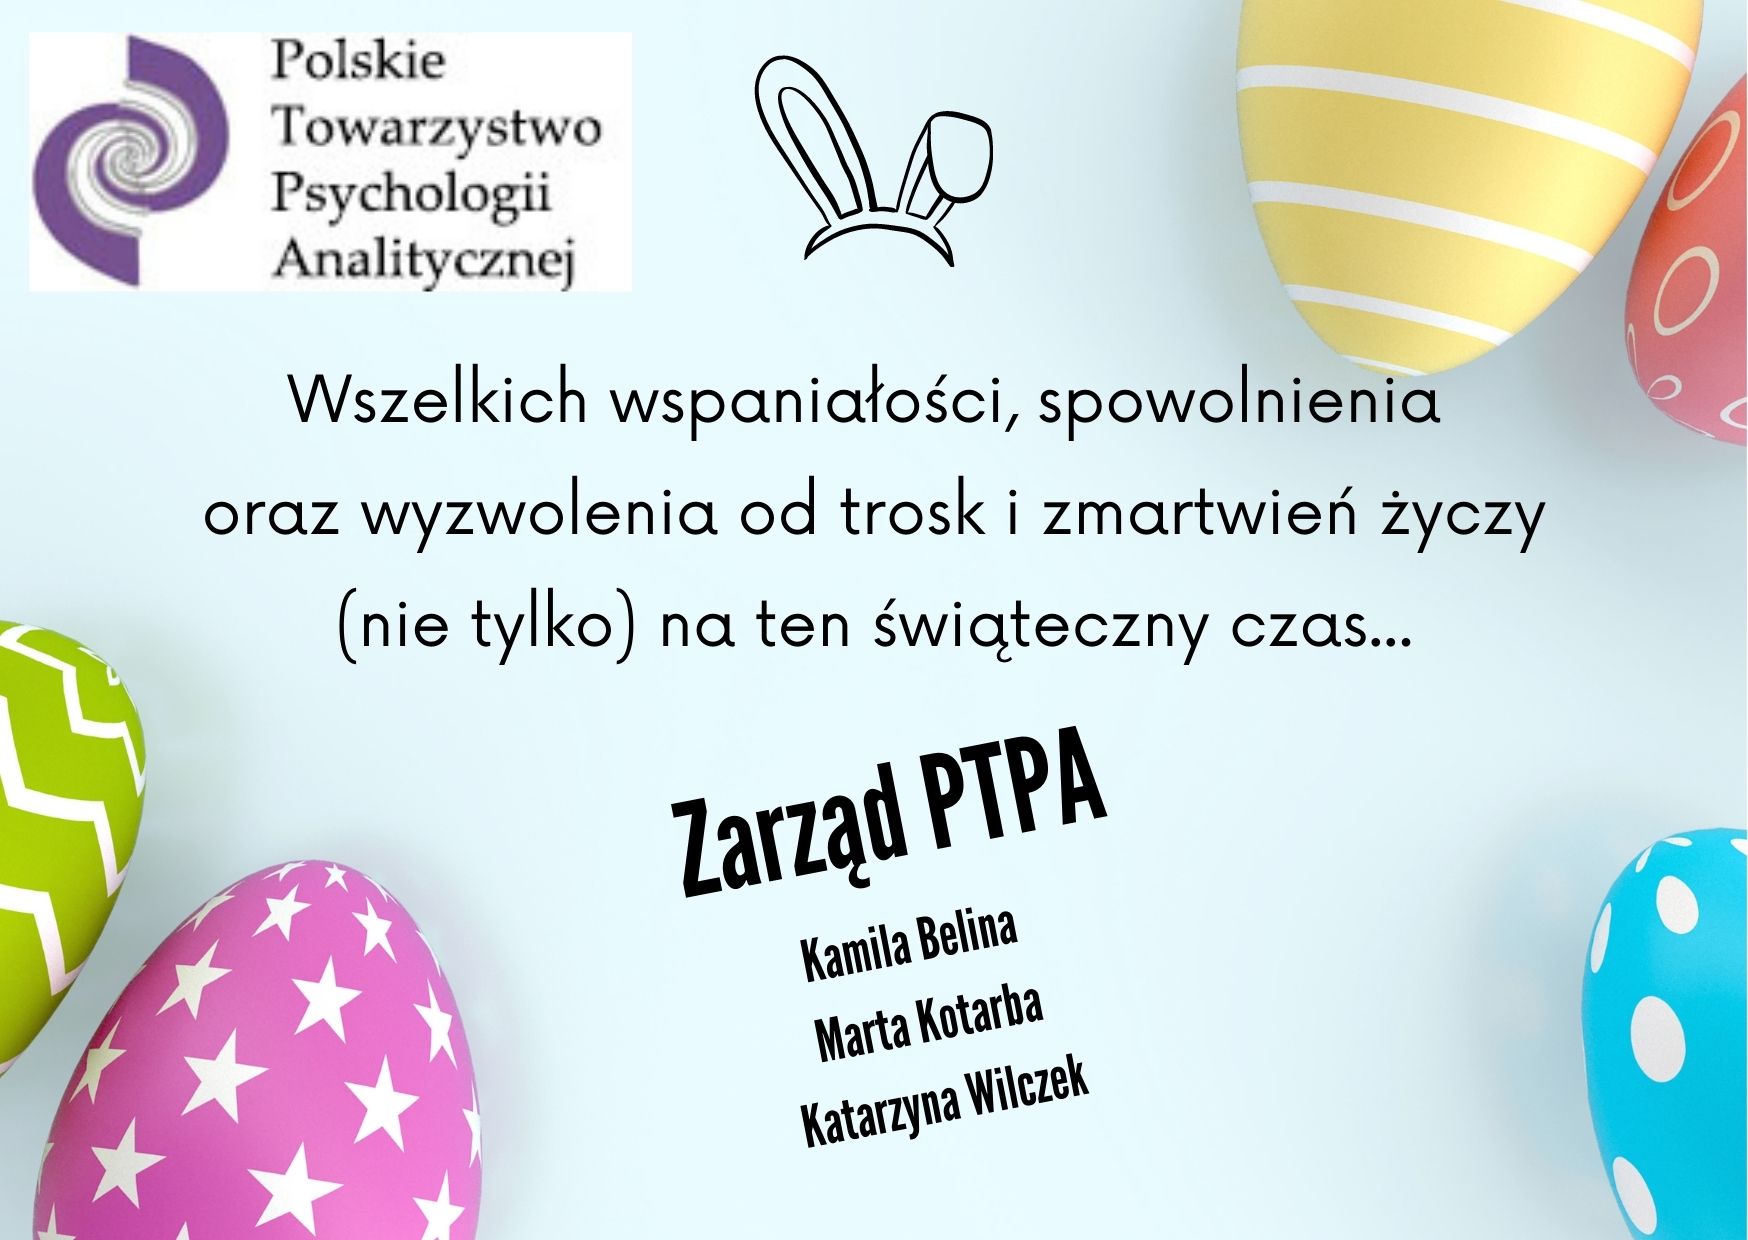 Życzenia Wielkanocne Od Zarządu PTPA